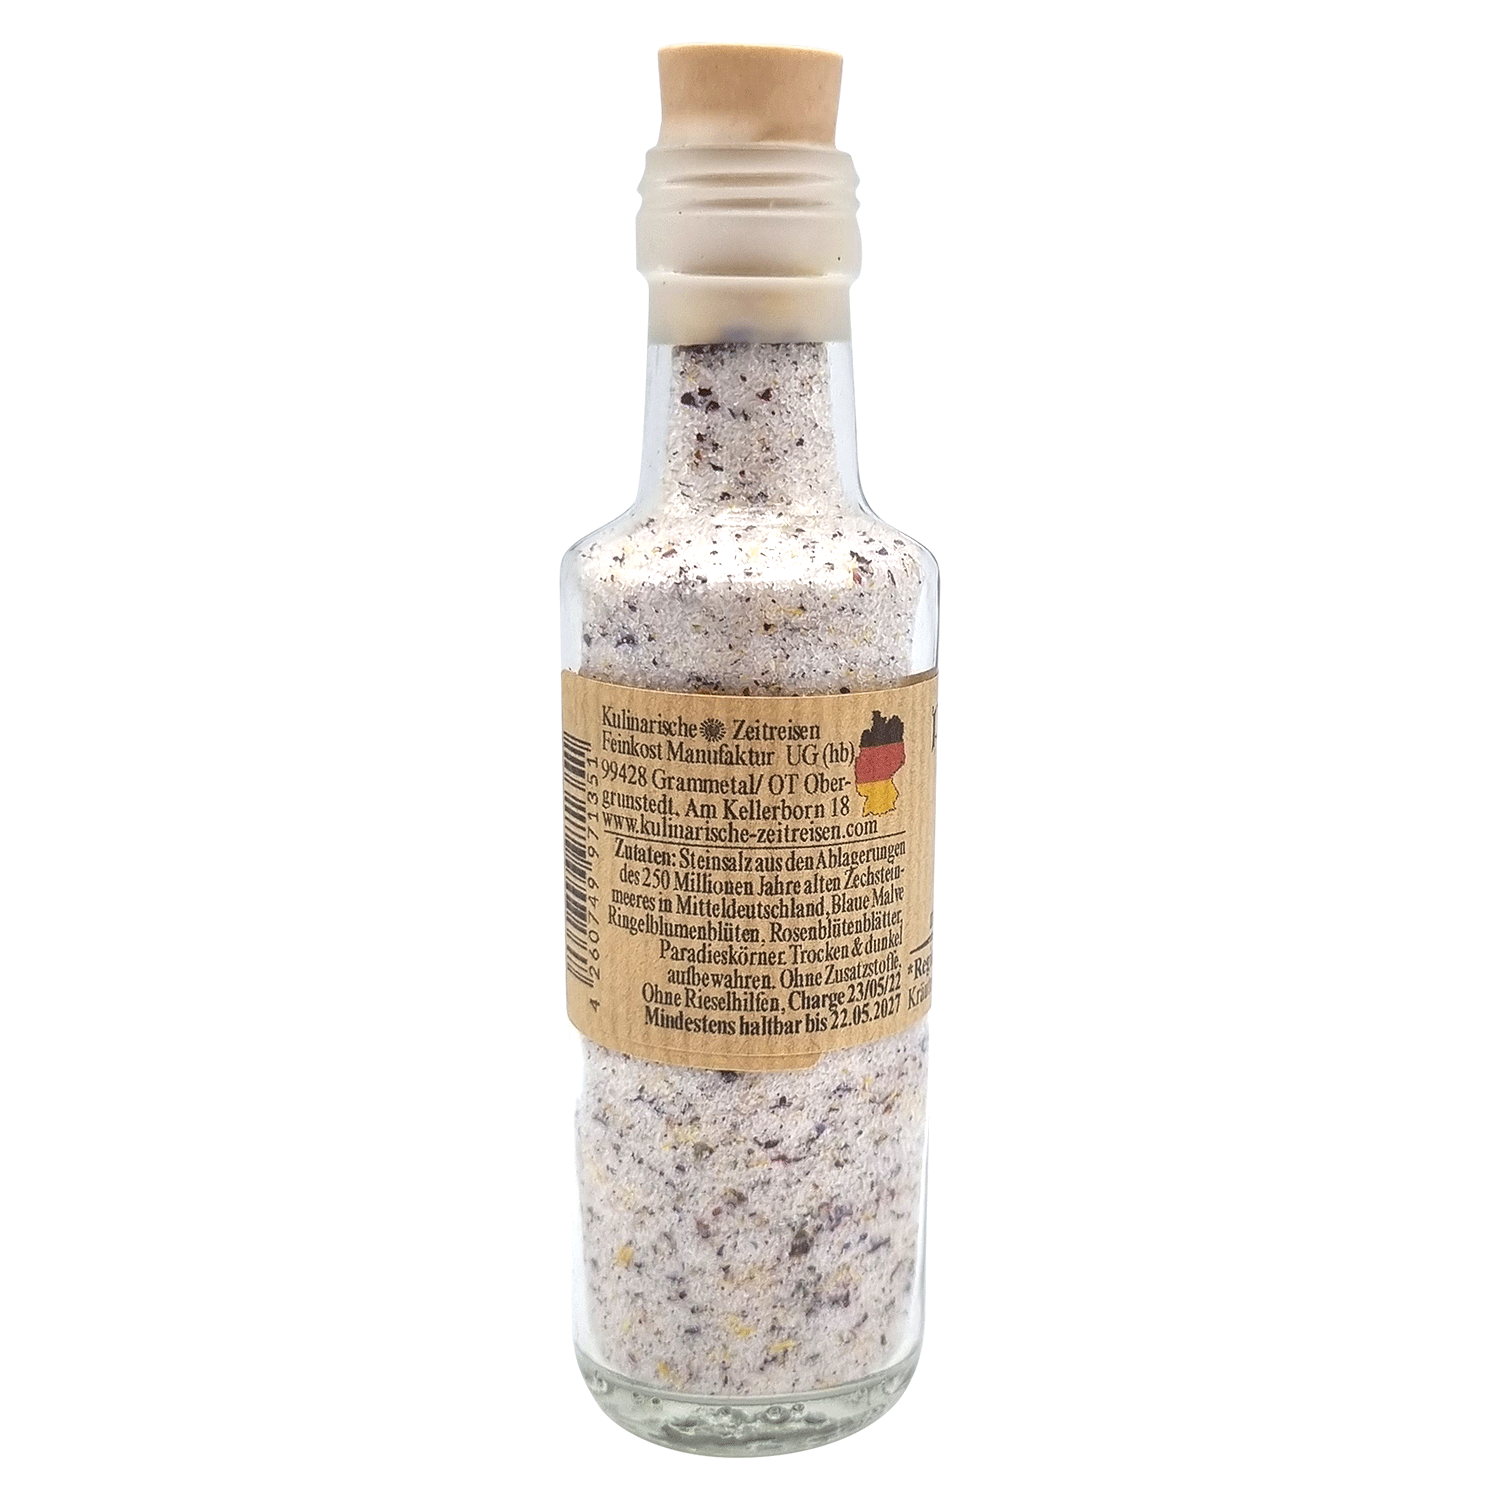 Pilger Salz mit Sommerblüten (Deutsches Salz)